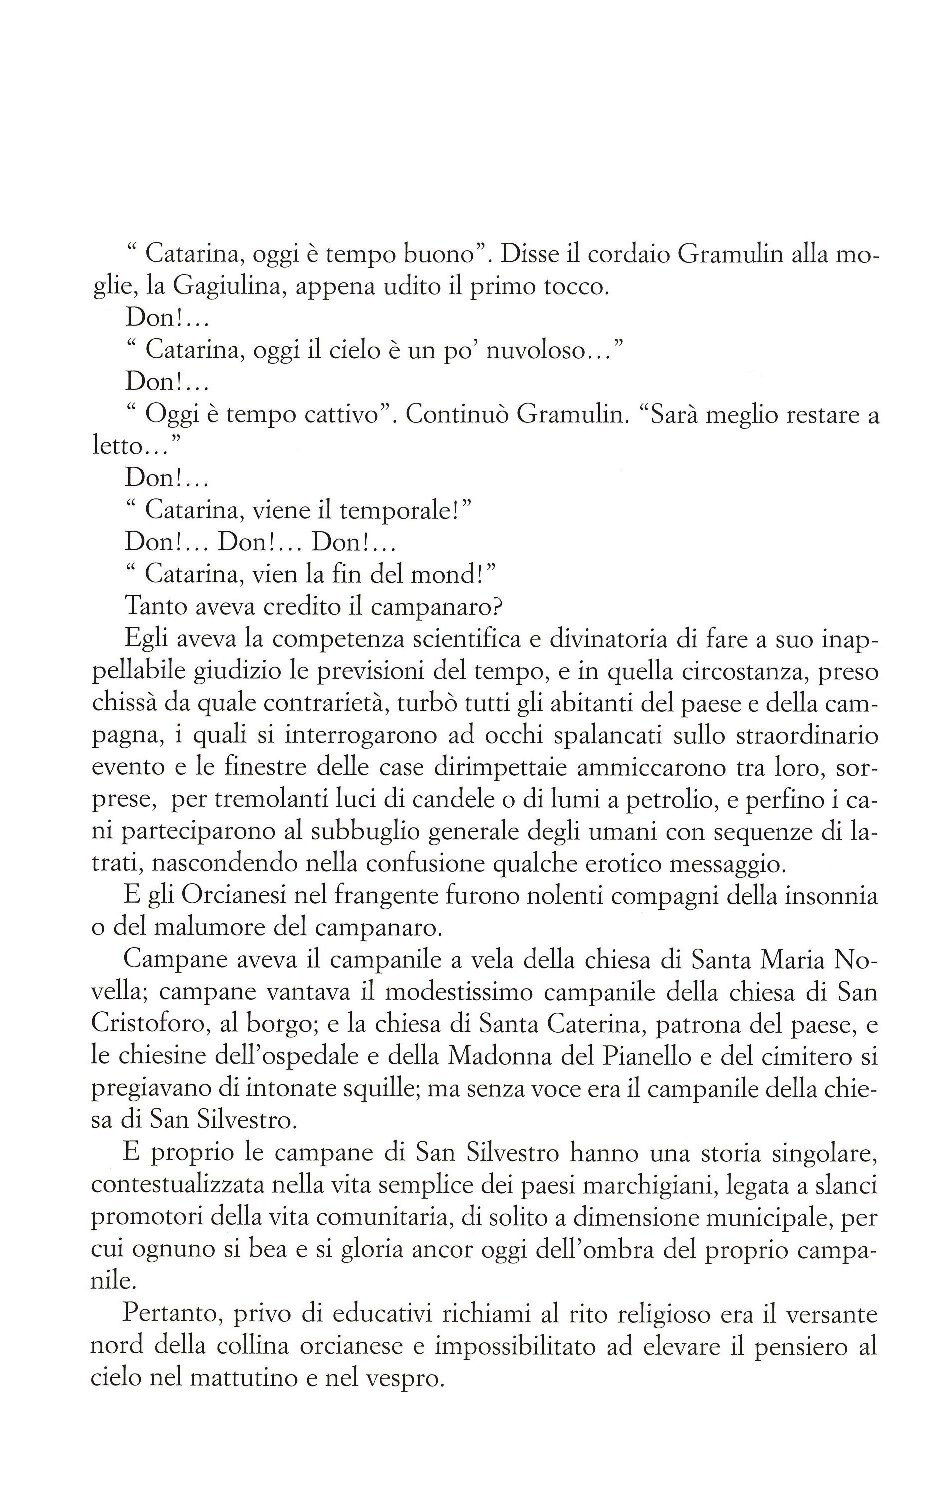 La torr i arduna tutti 2006 p.017